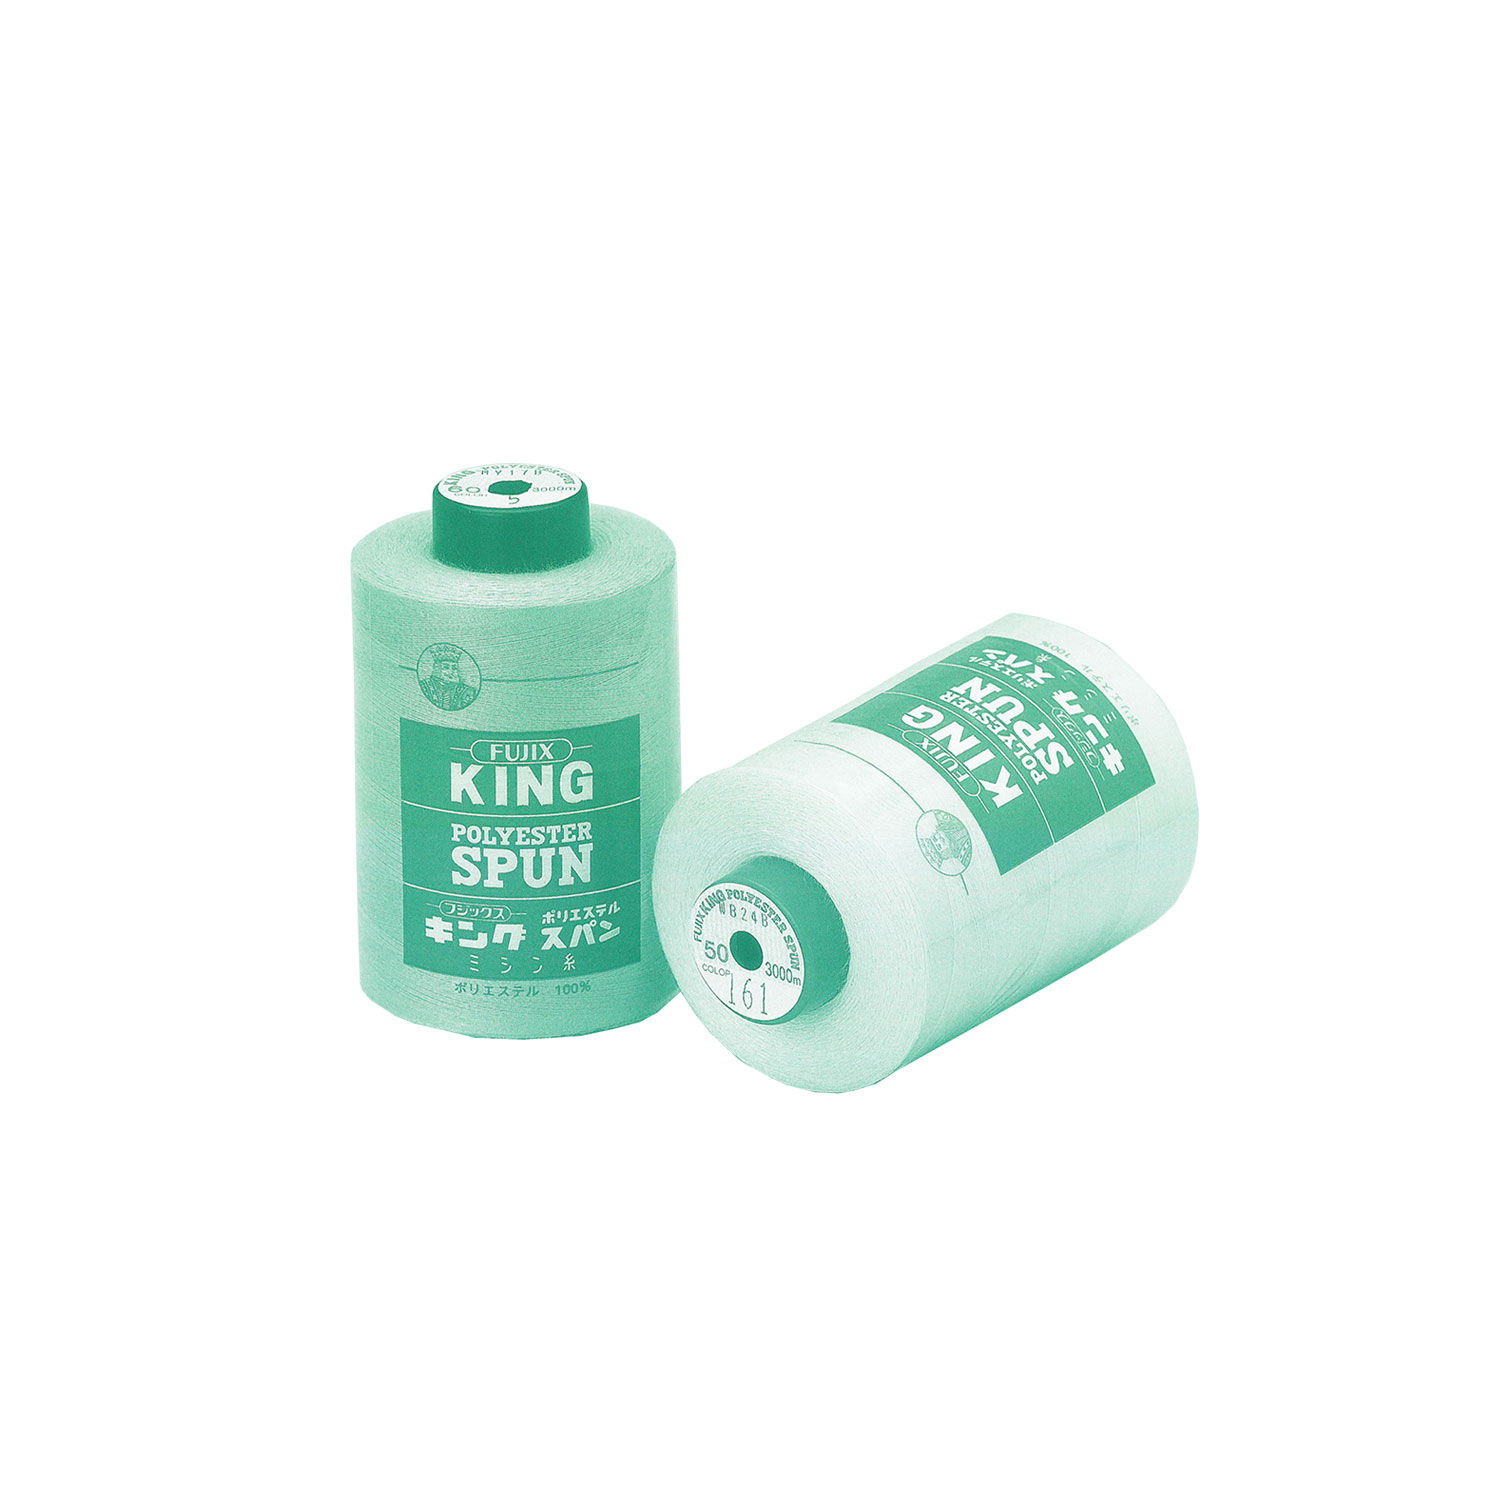 キングスパン King Polyester Spun (Industrial)[Fio] FUJIX